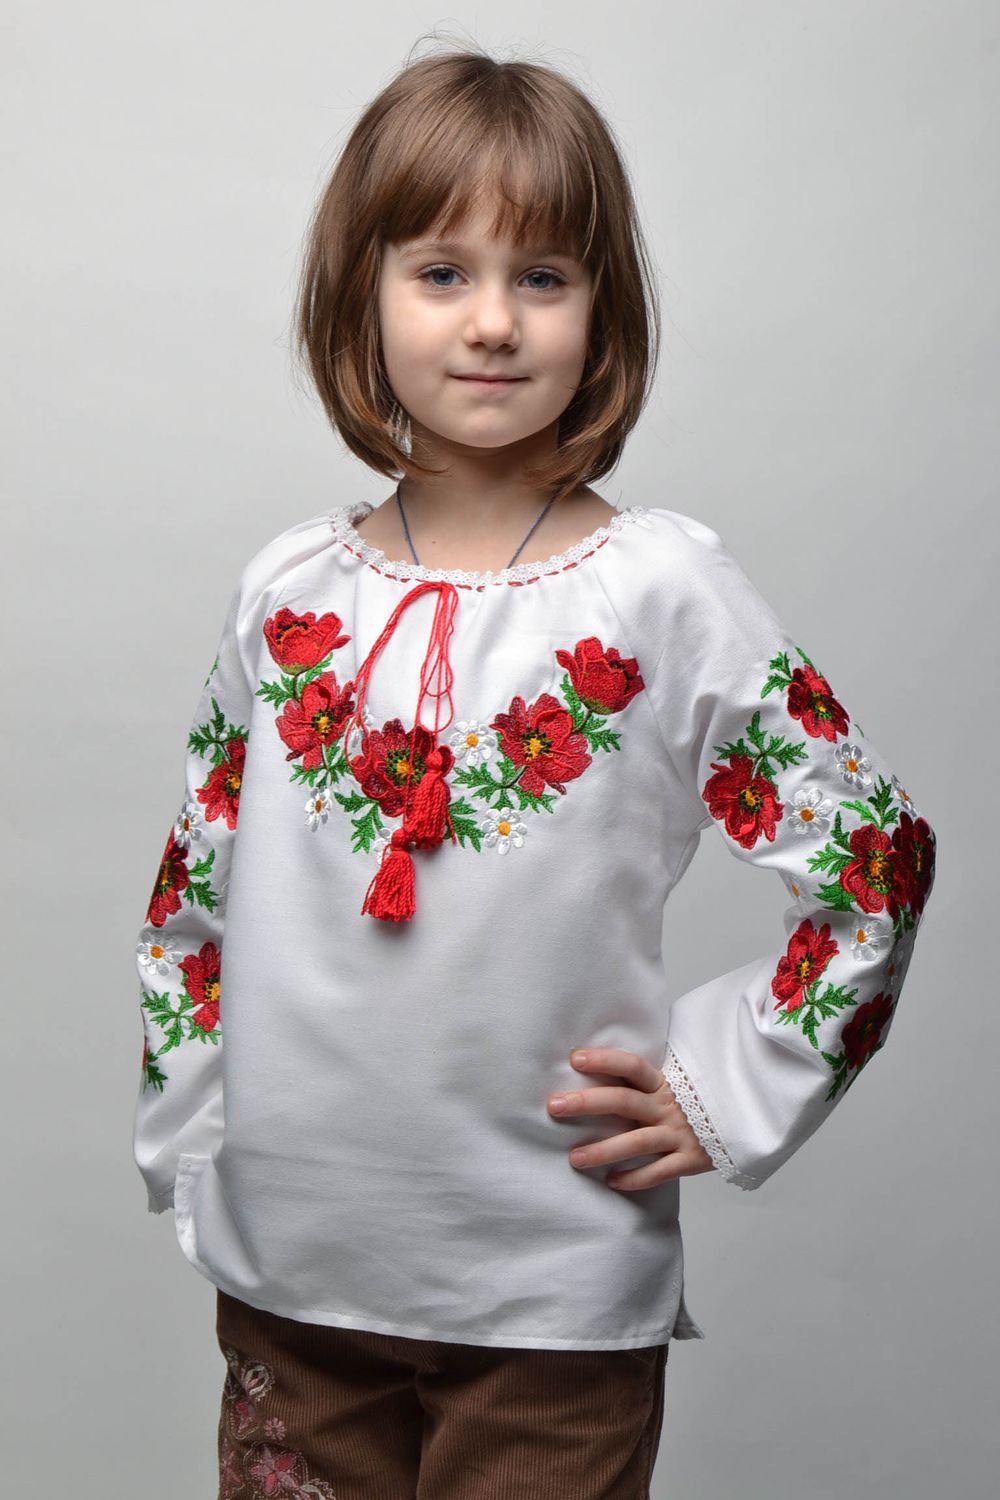 Camisa bordada de realce para niña de 5-7 años foto 1